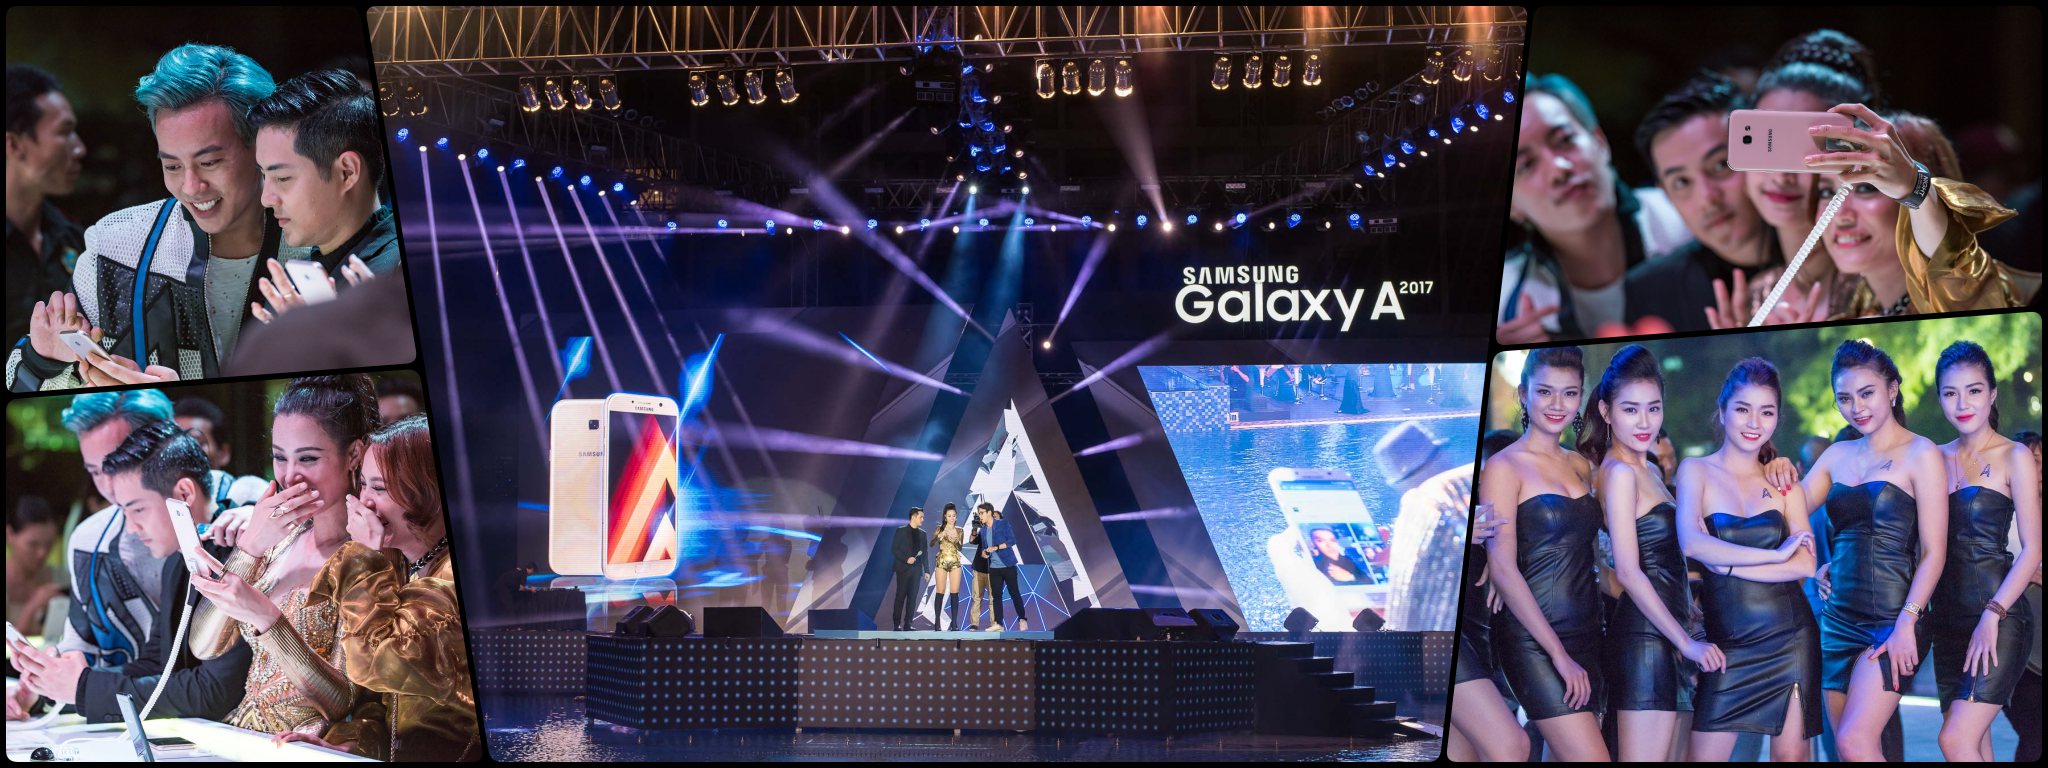 Toàn cảnh sự kiện “A Night pool party” ra mắt chính thức dòng sản phẩm Samsung Galaxy A 2017 tại HCM